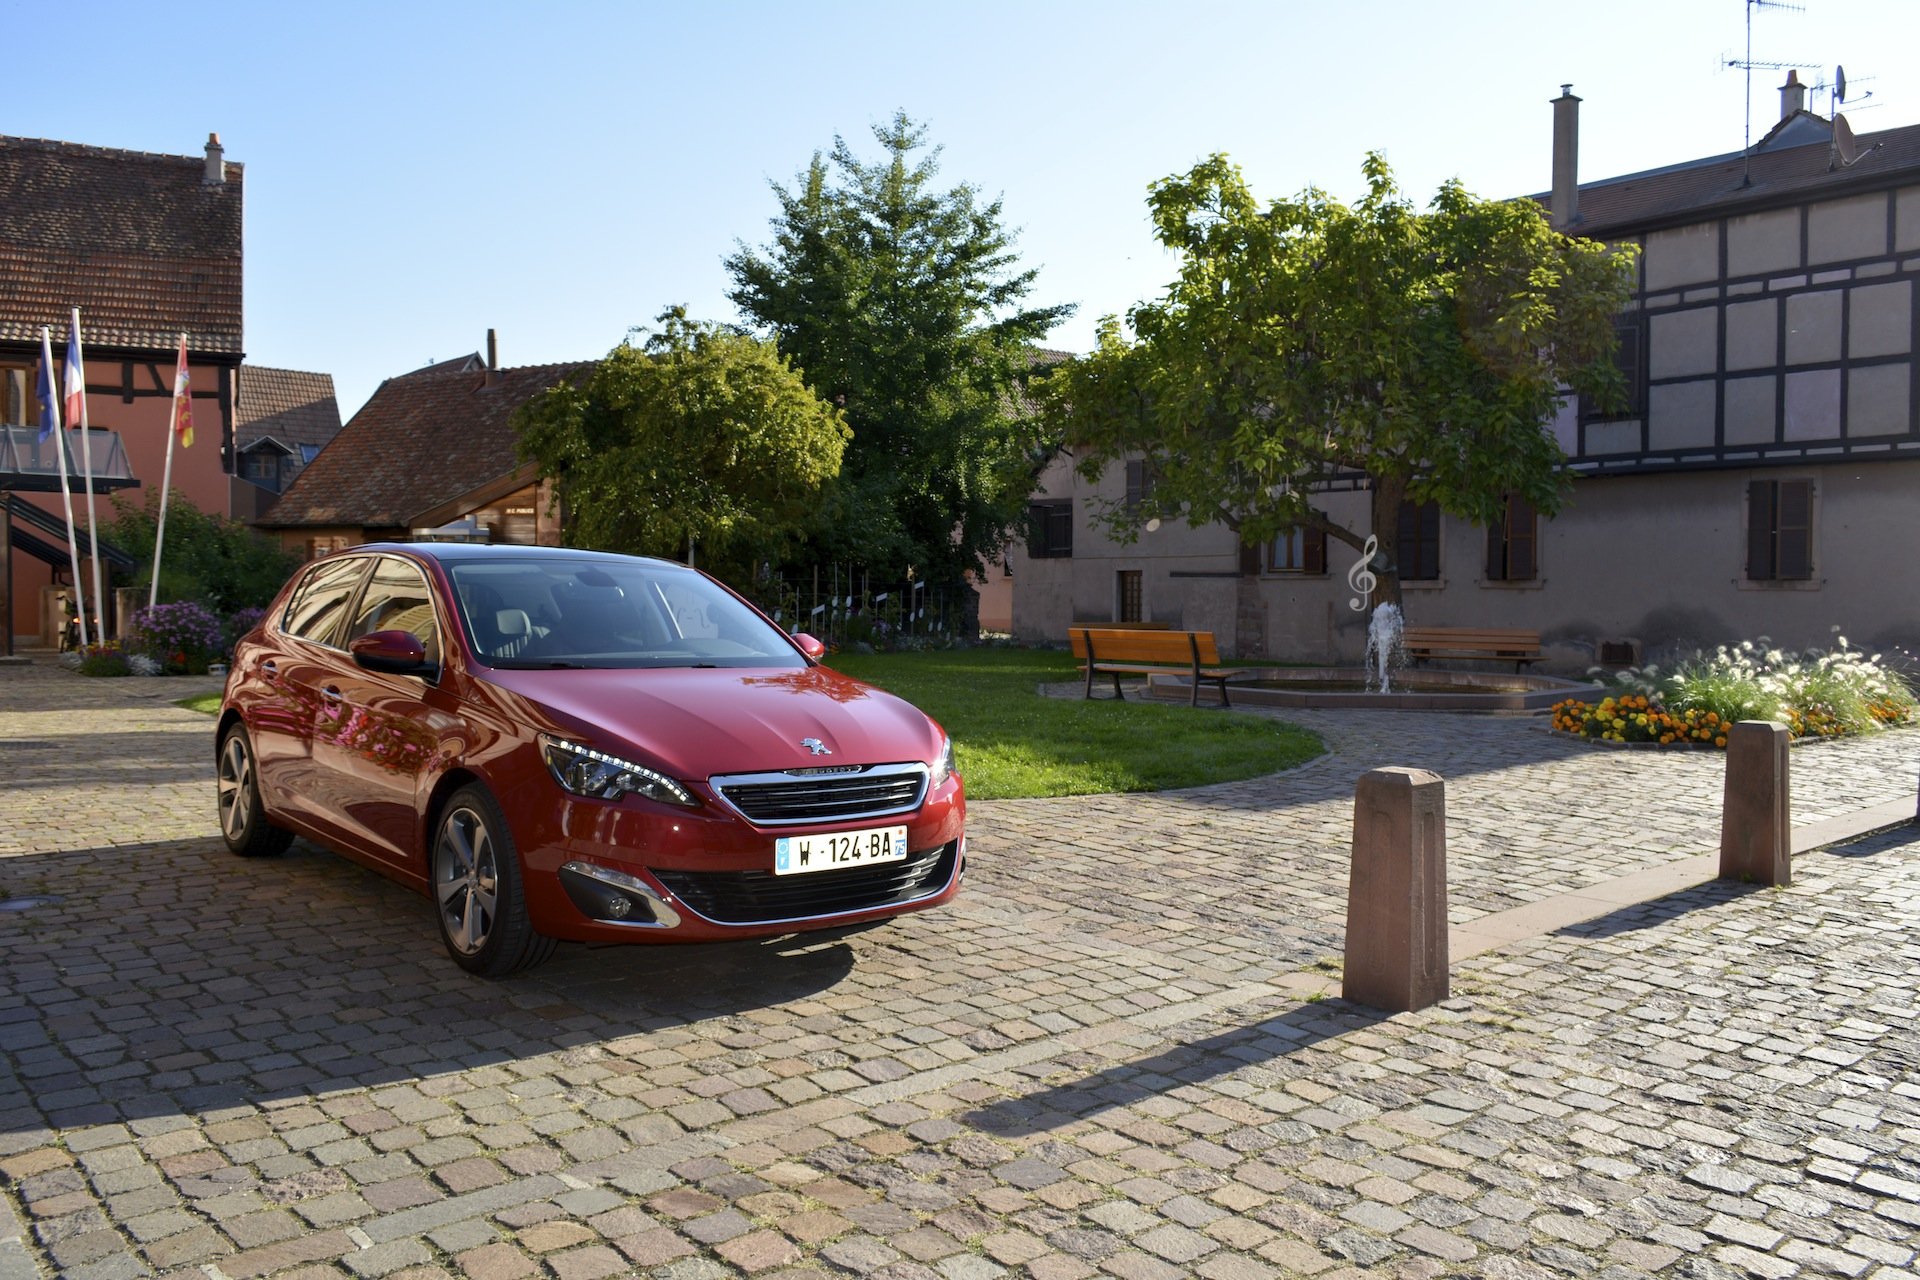 Image 17 : [Test] Nouvelle 308 : Le high-tech s’invite chez Peugeot